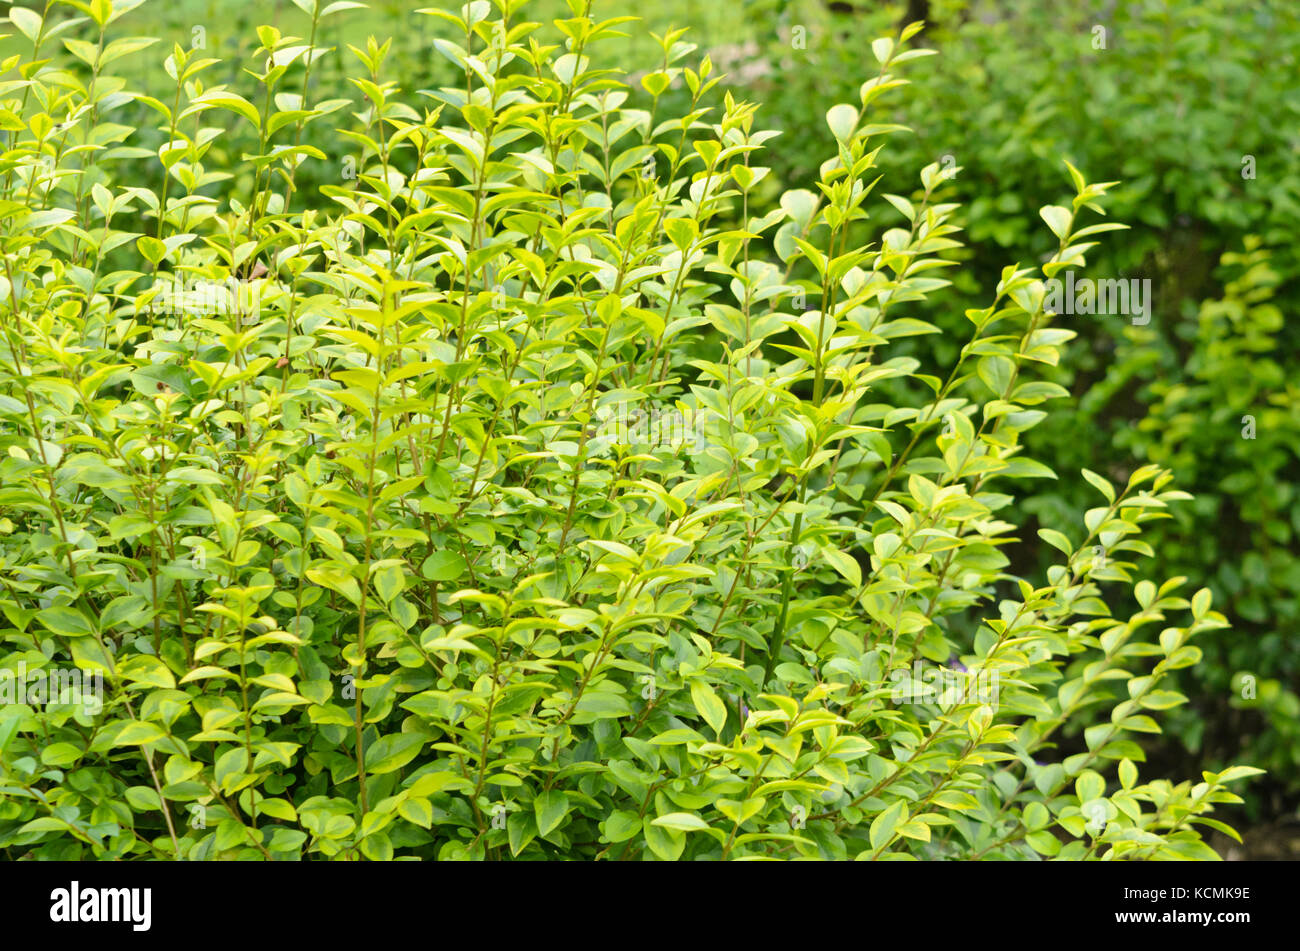 California privet (Ligustrum ovalifolium 'Aureum') Stock Photo